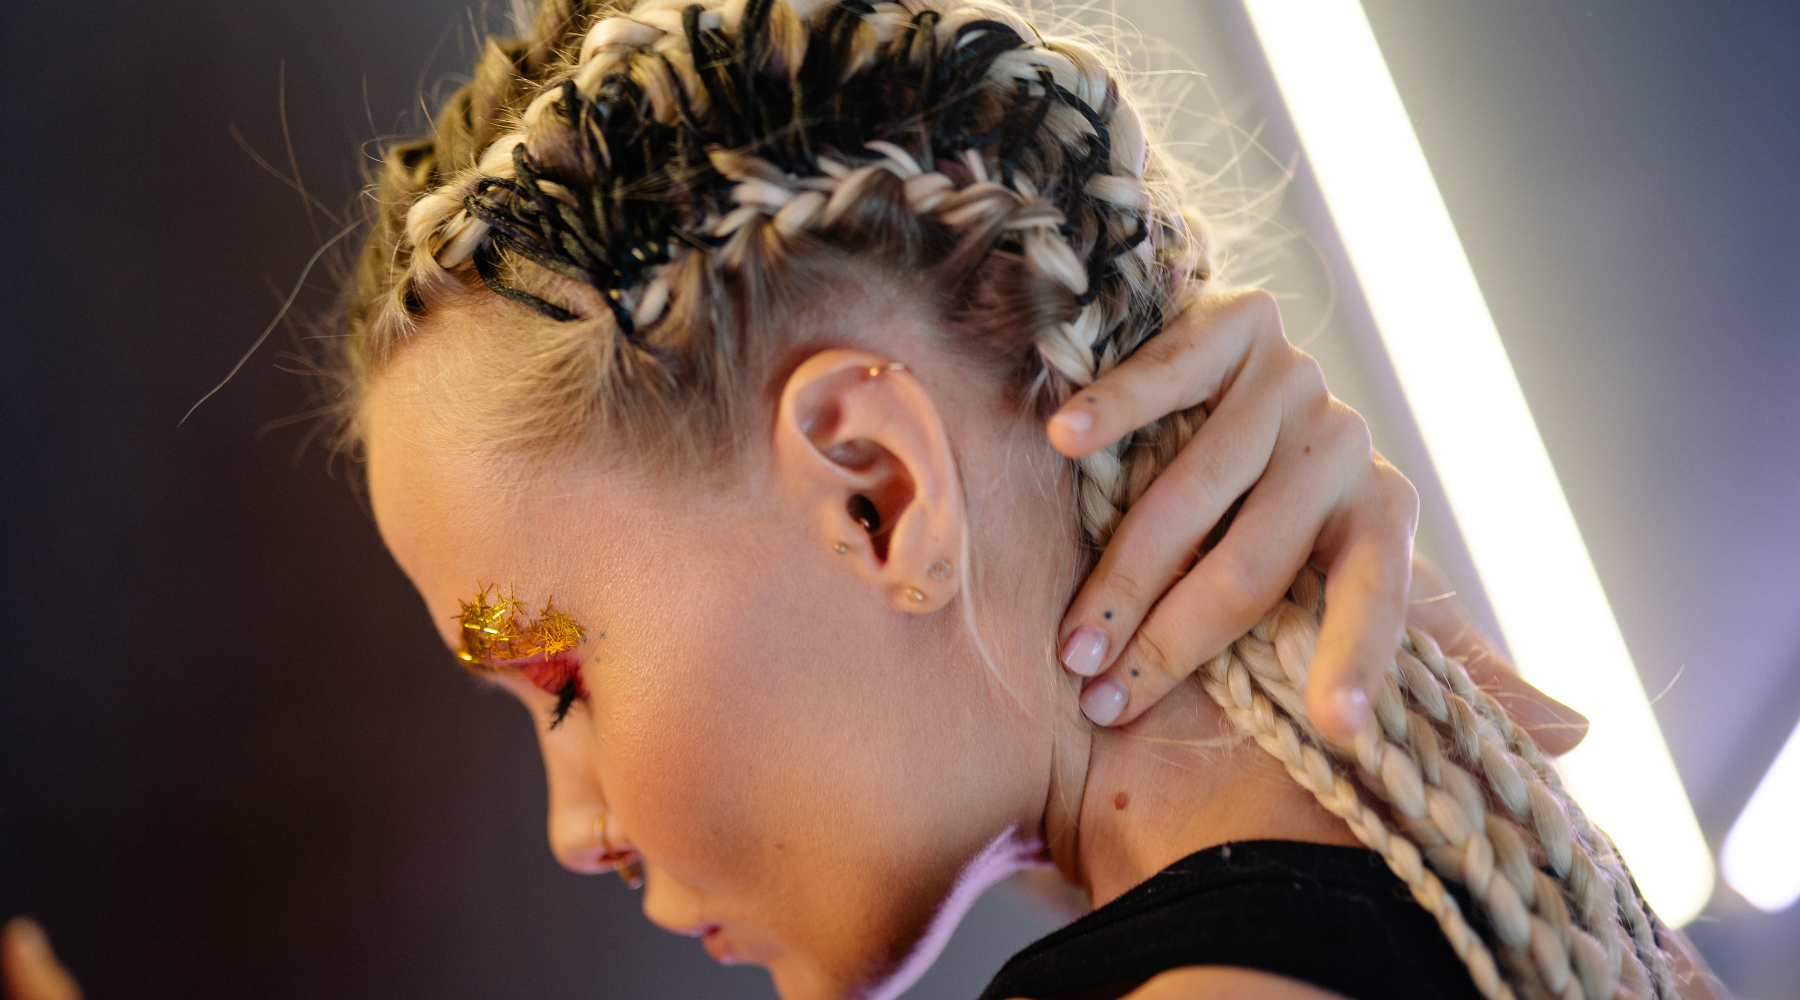 Women wearing jewels from Luna Piercings on her ears